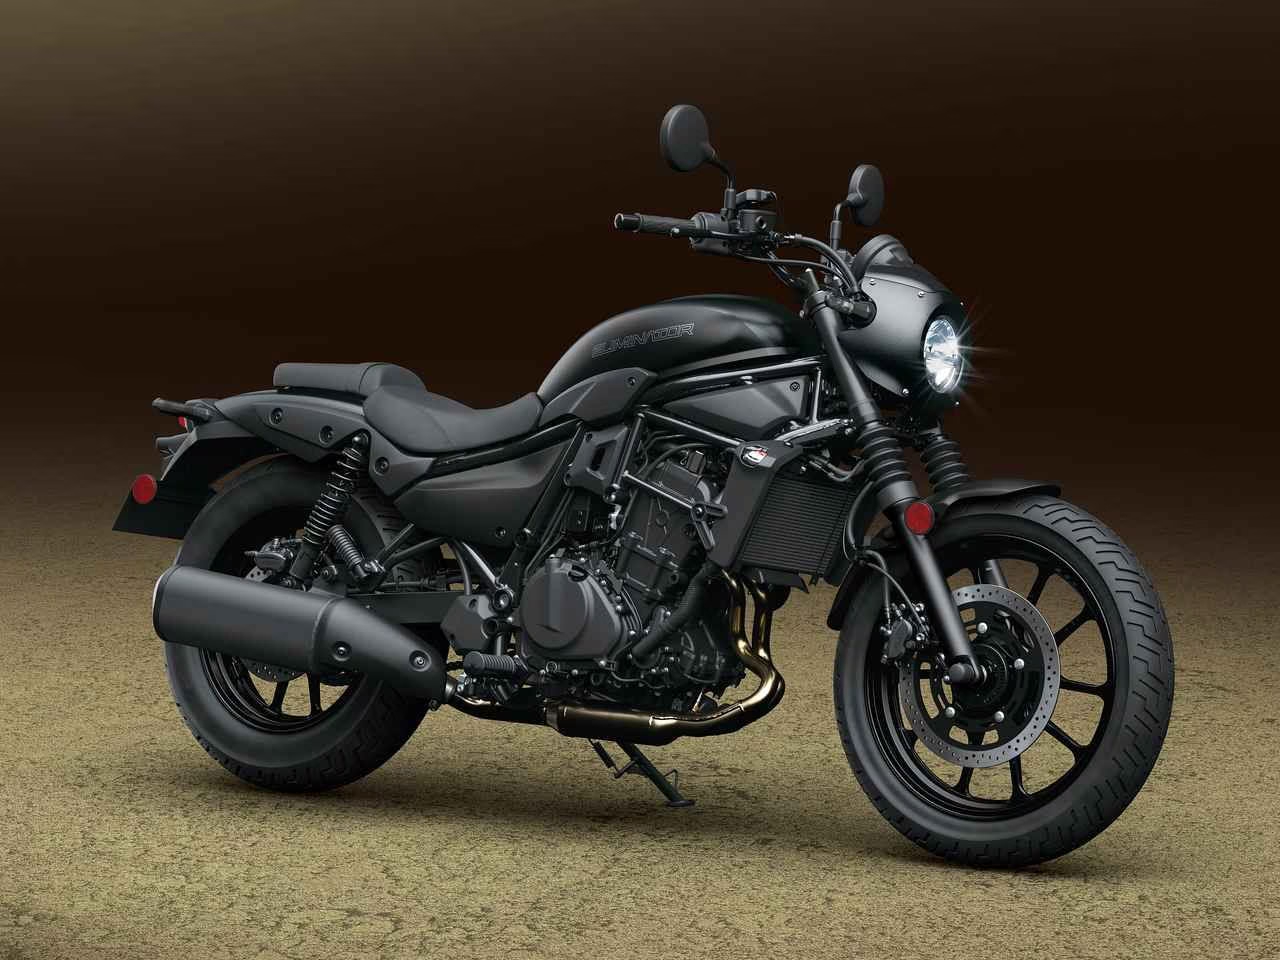 Kawasaki anunciou o lançamento da Eliminator 450, uma nova motocicleta que irá integrar sua linha de produtos